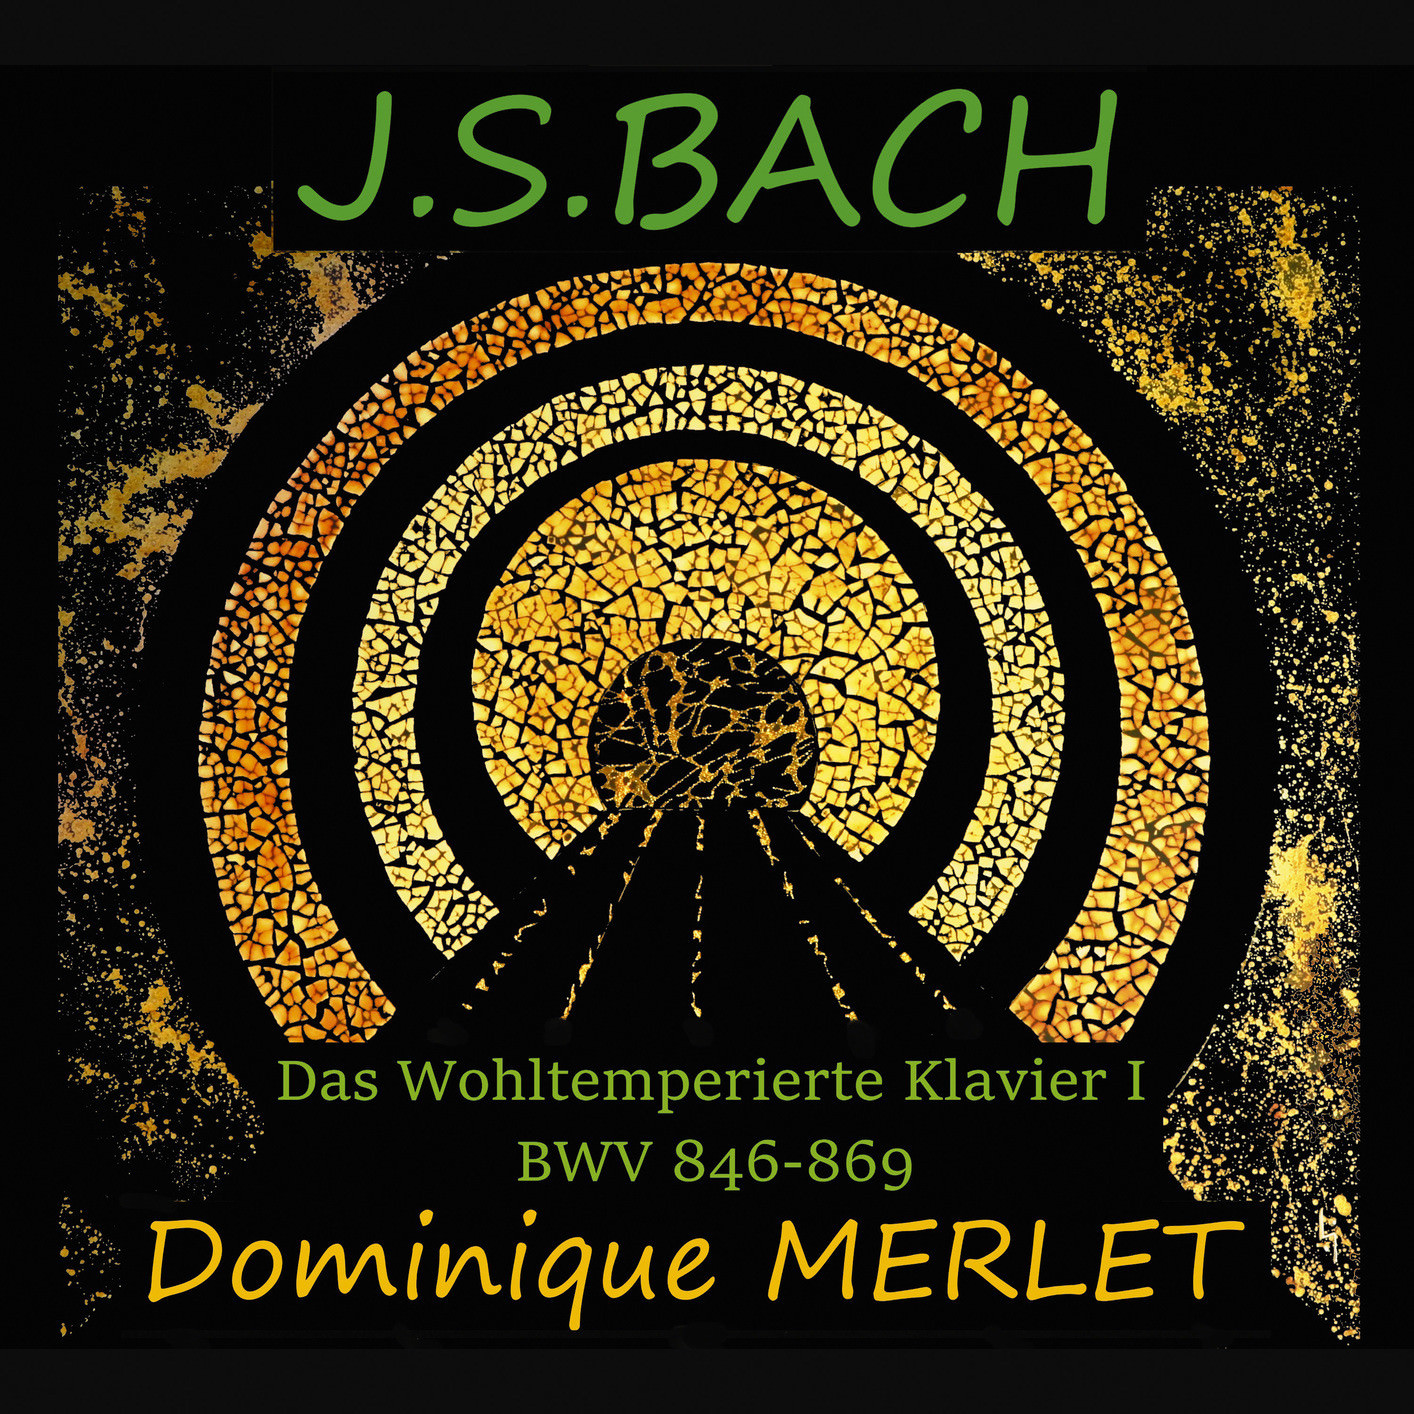 Dominique Merlet - J.S. Bach: Das Wohltemperierte Klavier I, BWV 846-869 (2018) [FLAC 24bit/88,2kHz]